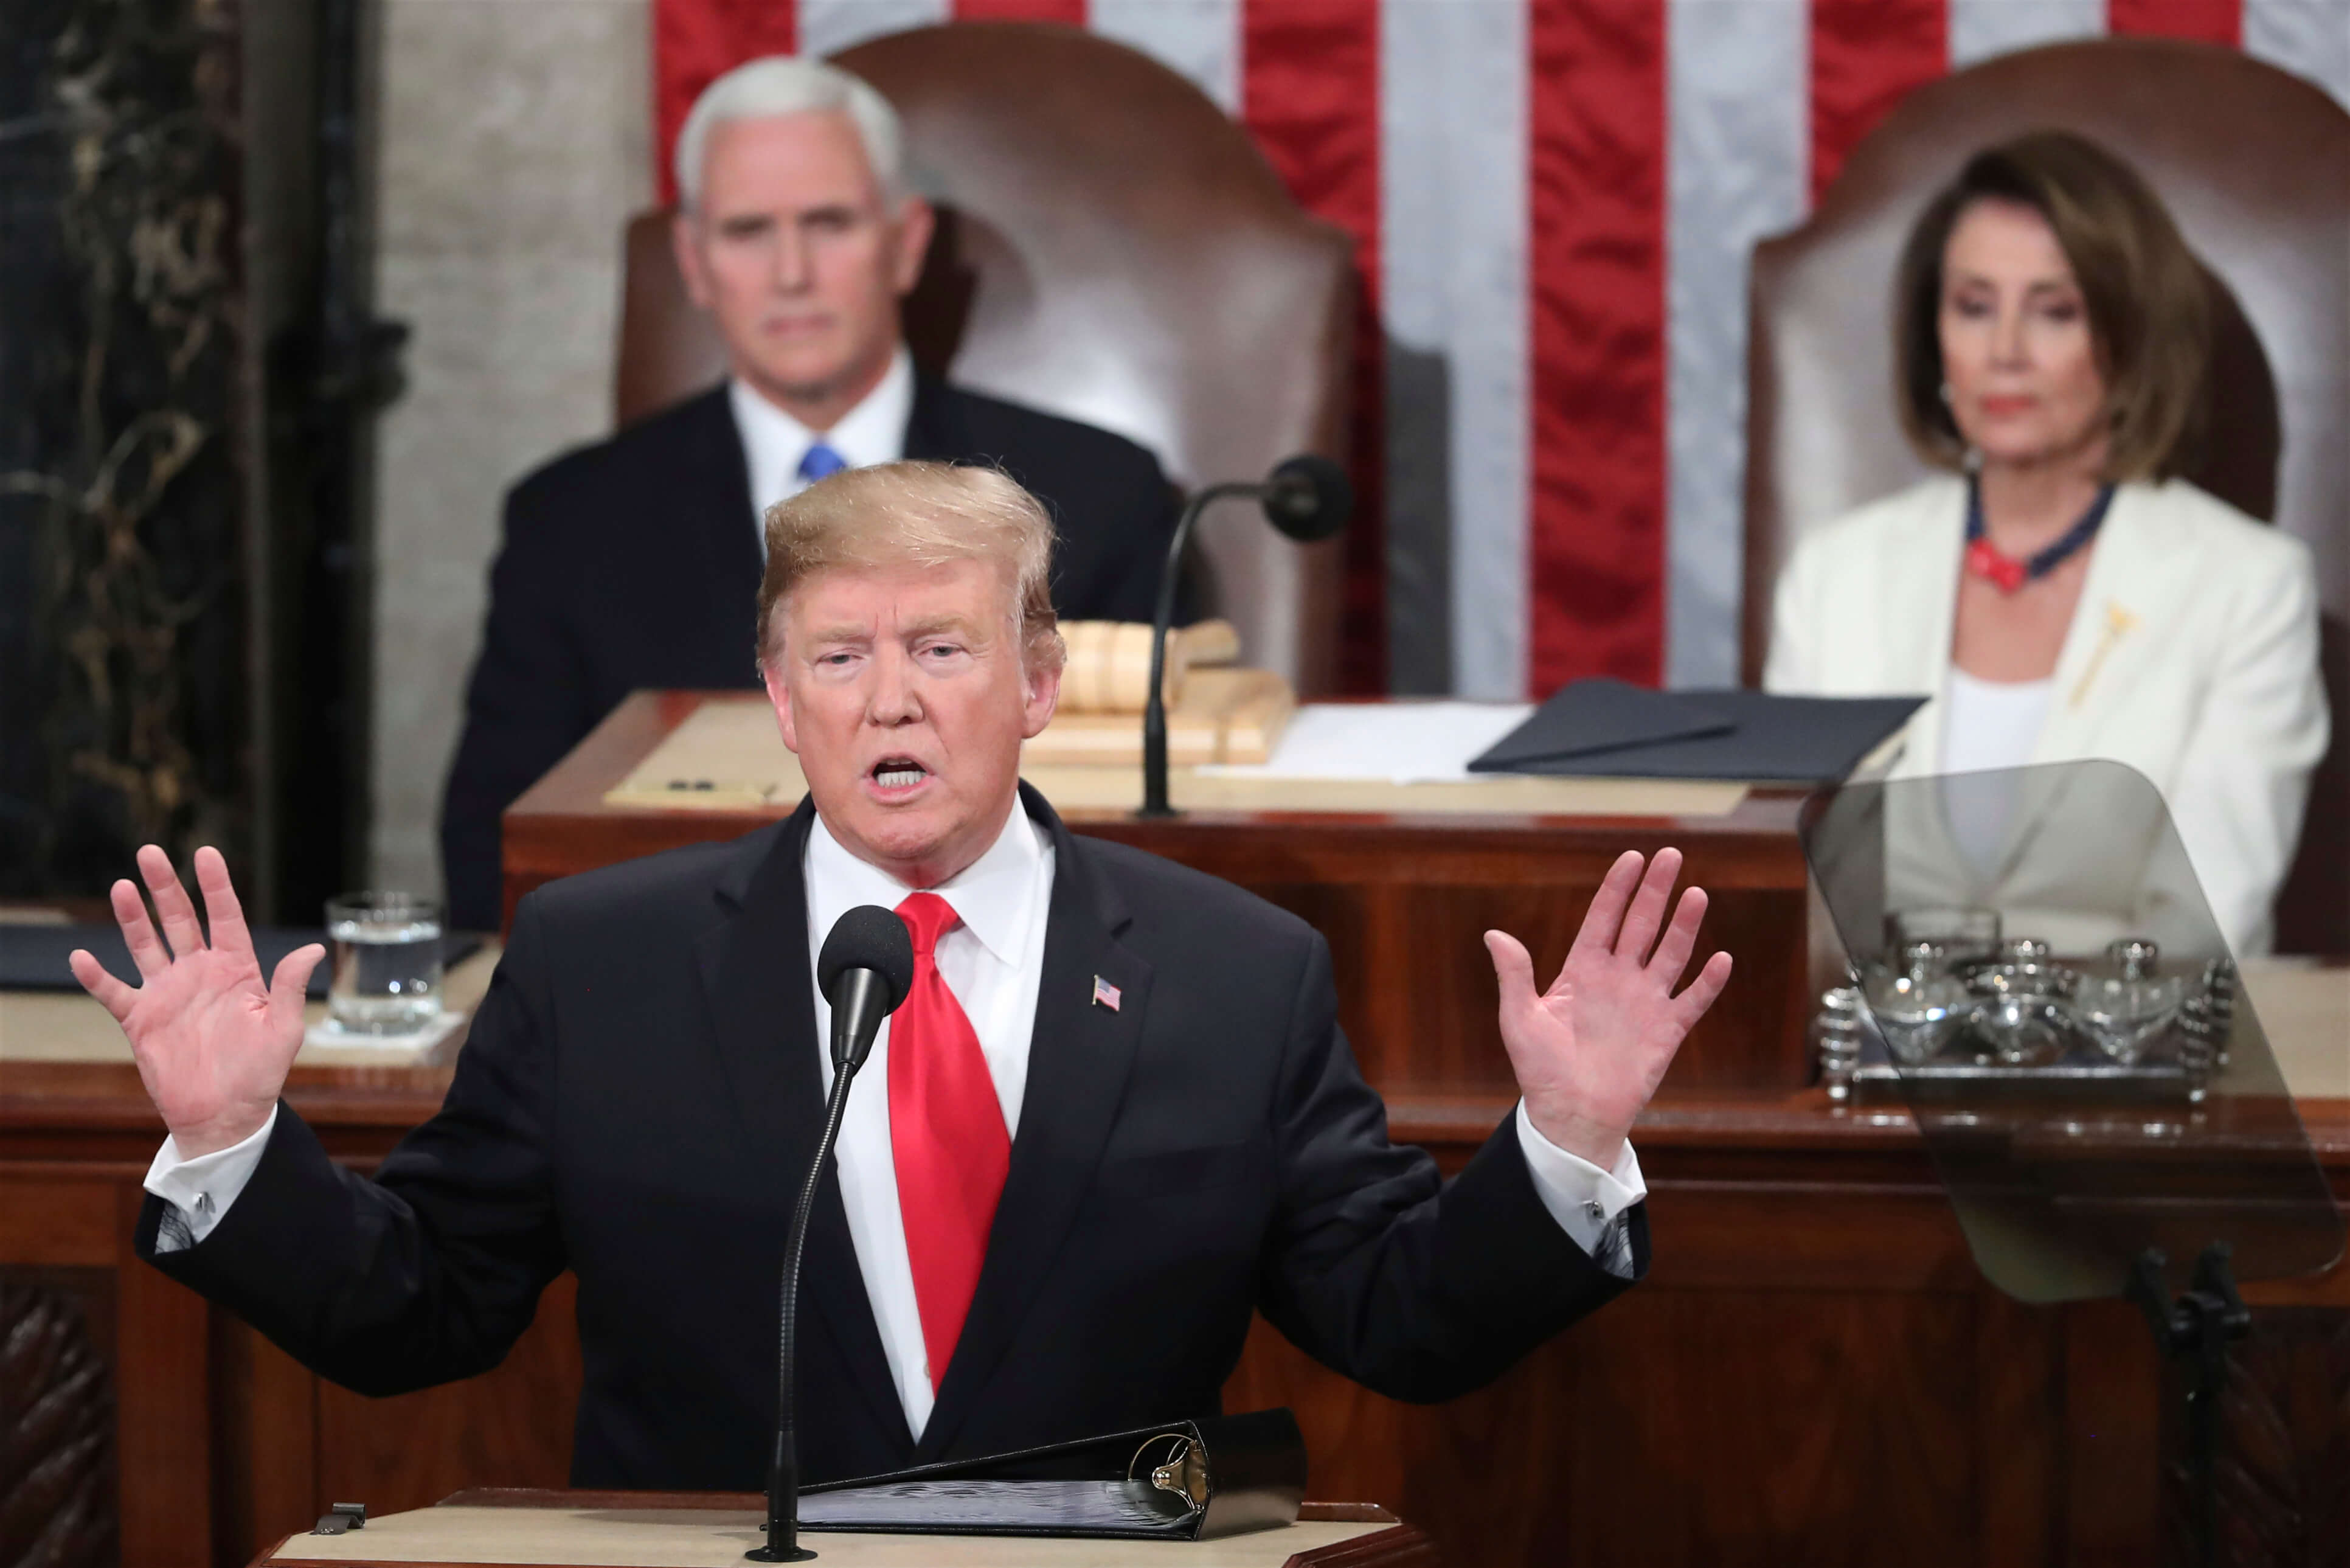 FOTO Trump usó miedo a migrantes en discurso del Estado de la Unión washington 5 febrero 2019